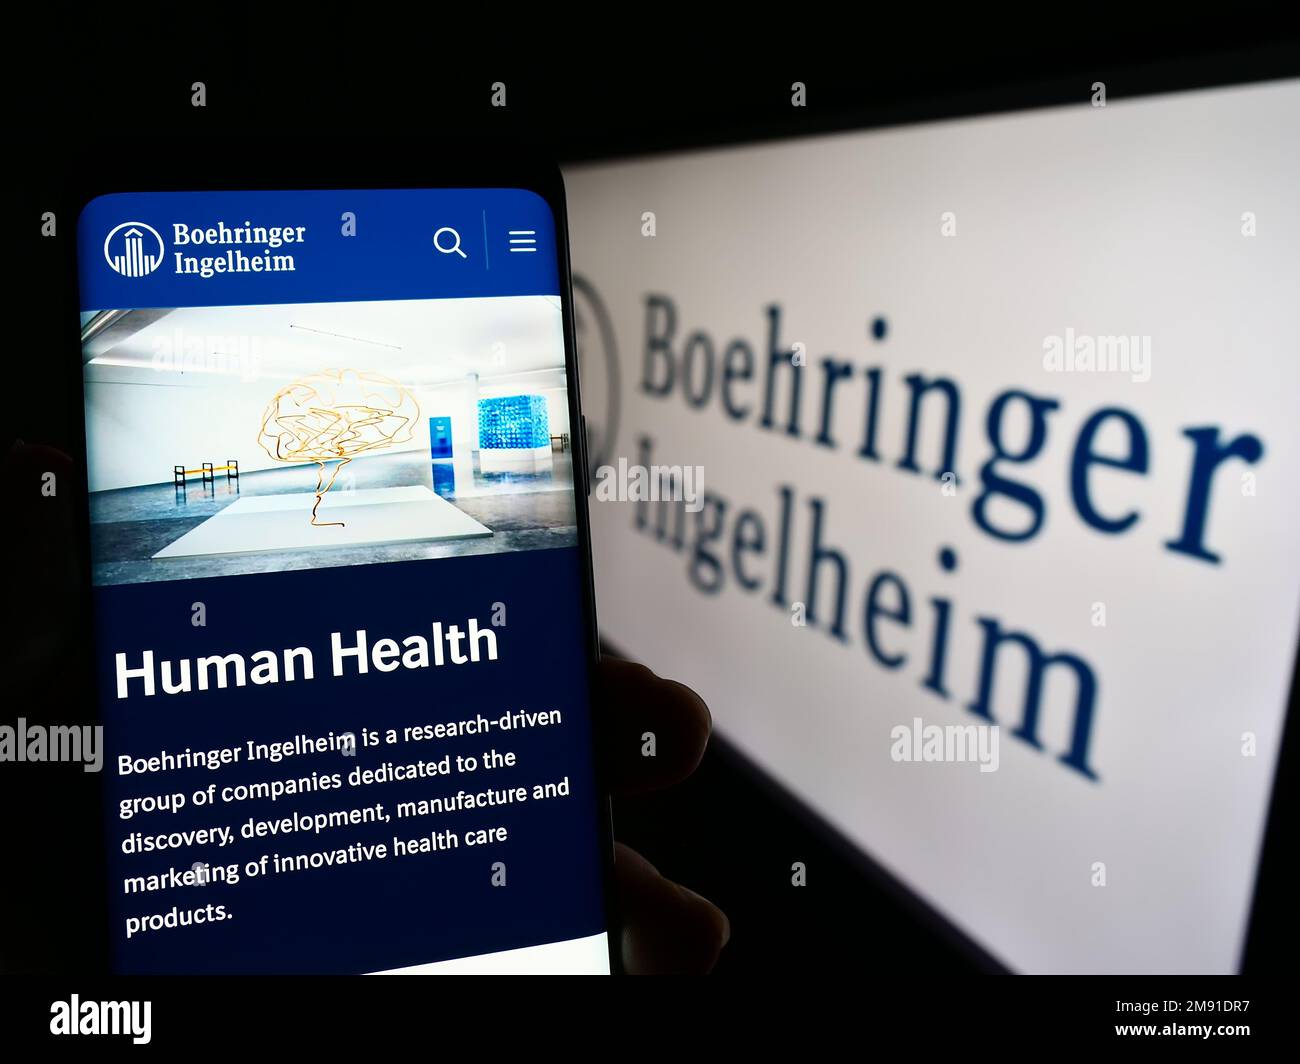 Persona che tiene in mano smartphone con pagina web della società farmaceutica Boehringer Ingelheim sullo schermo con logo. Messa a fuoco al centro del display del telefono. Foto Stock